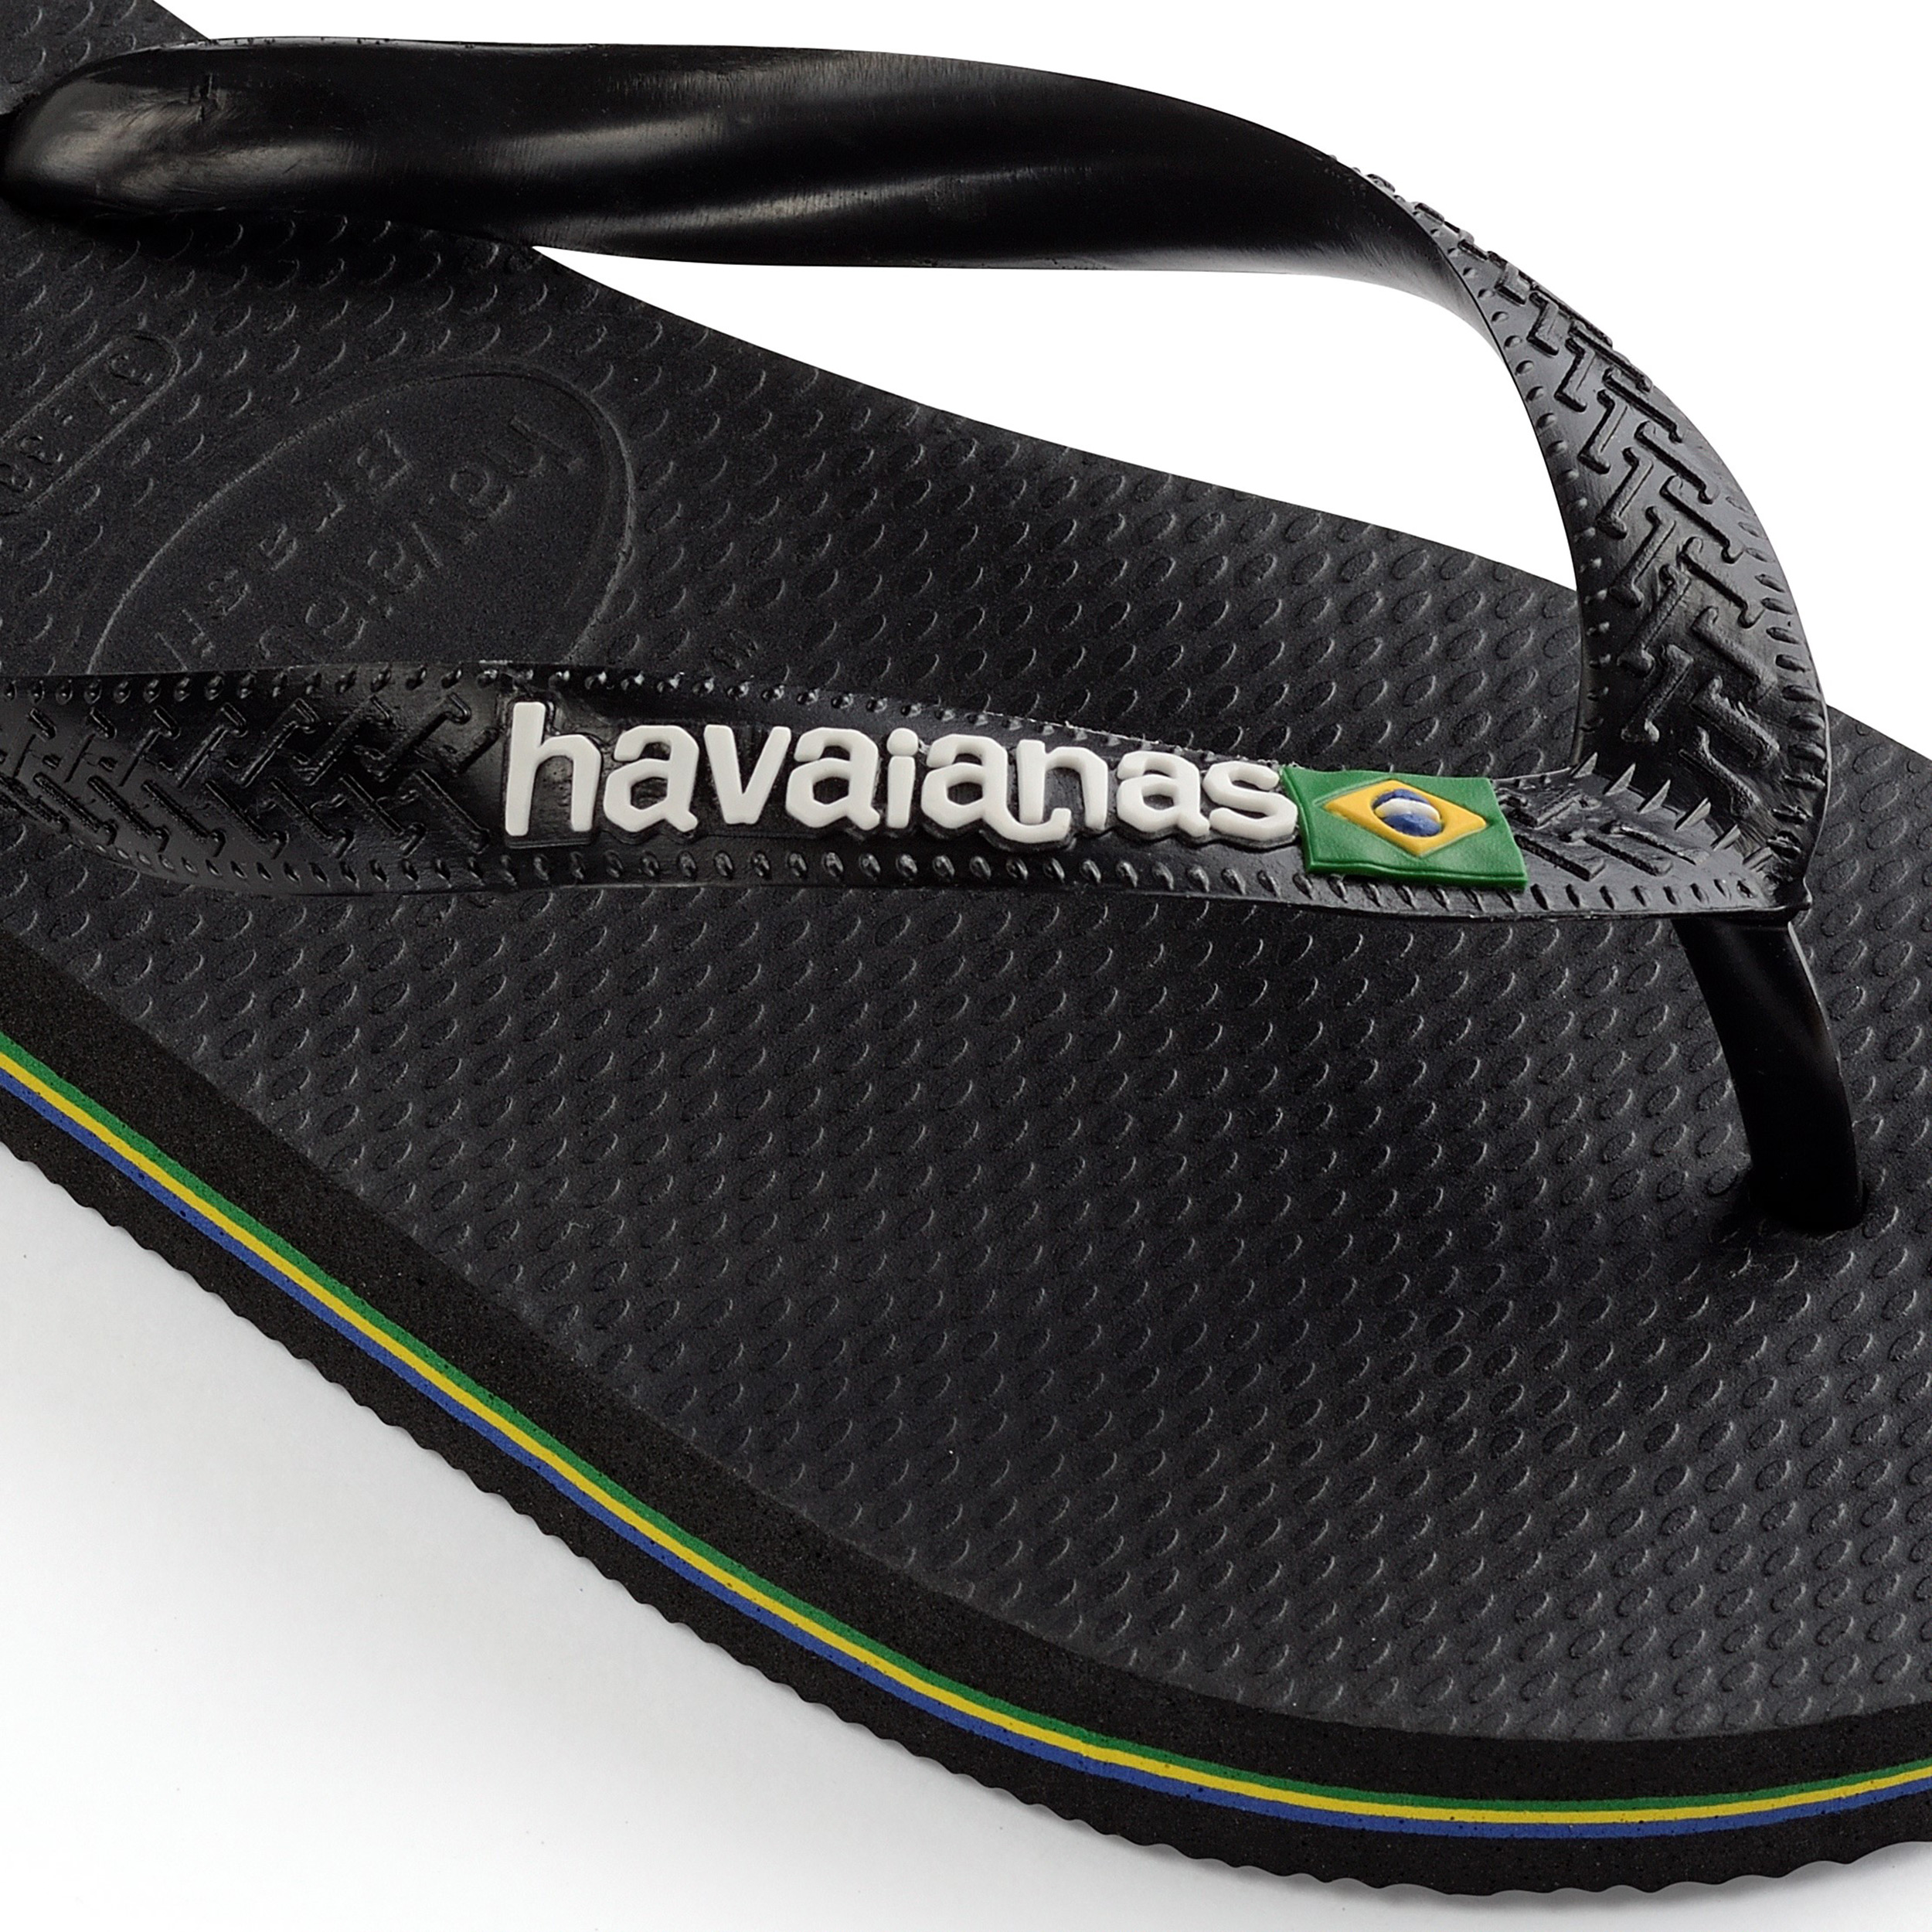 White Havaianas Men's  Flip Flops with Brazil Flag Shoes Mens Shoes Sandals Flip Flops & Thongs 